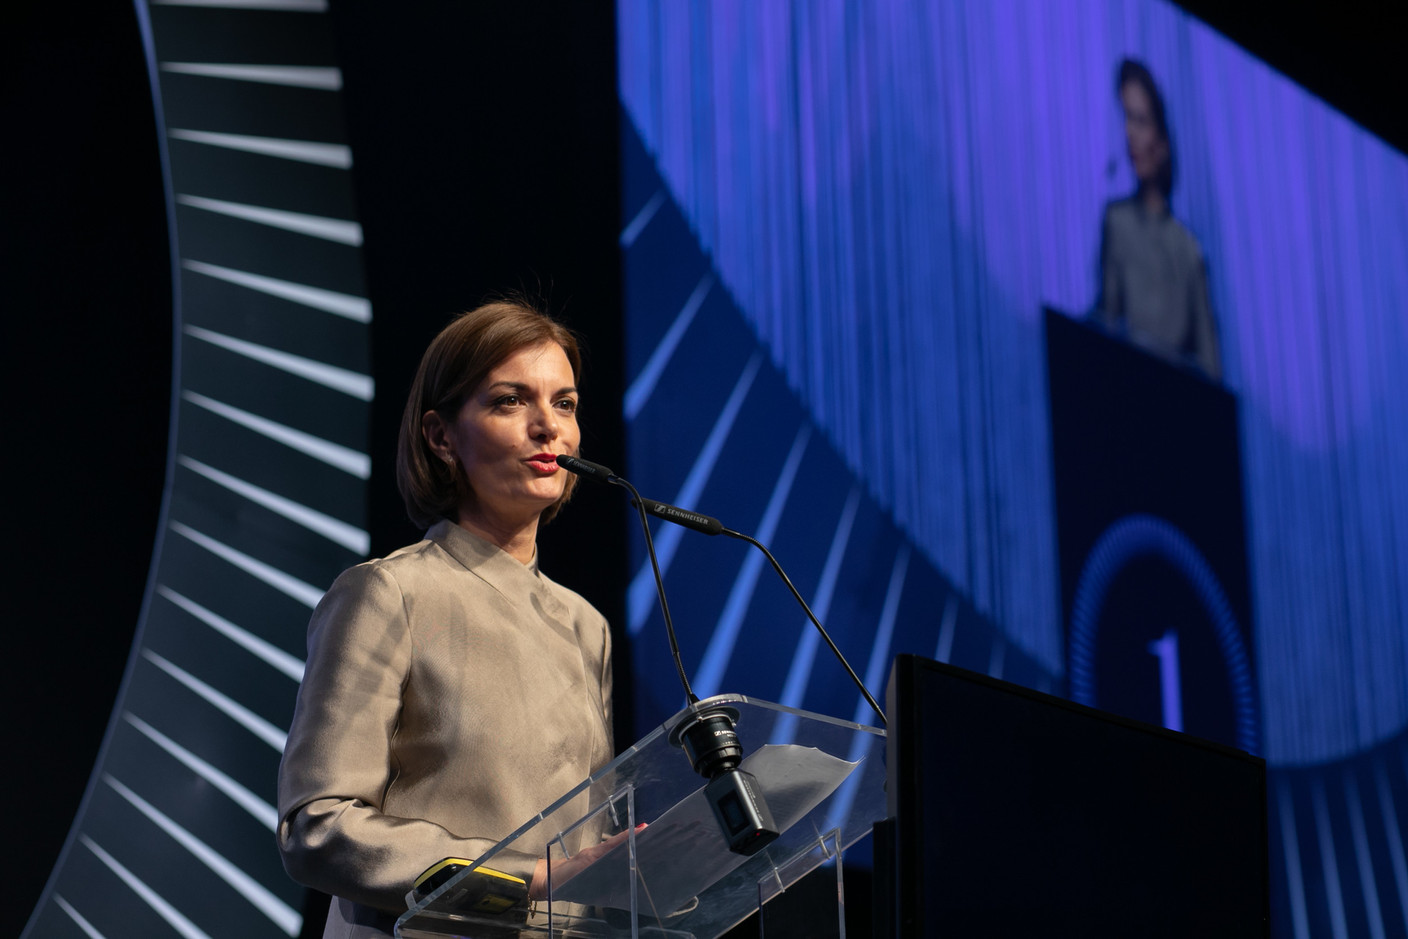 Le discours de Julie Becker, CEO de la Bourse de Luxembourg, remporte l’édition 2022 du Paperjam Top 100. (Photo: Matic Zorman/Maison Moderne)